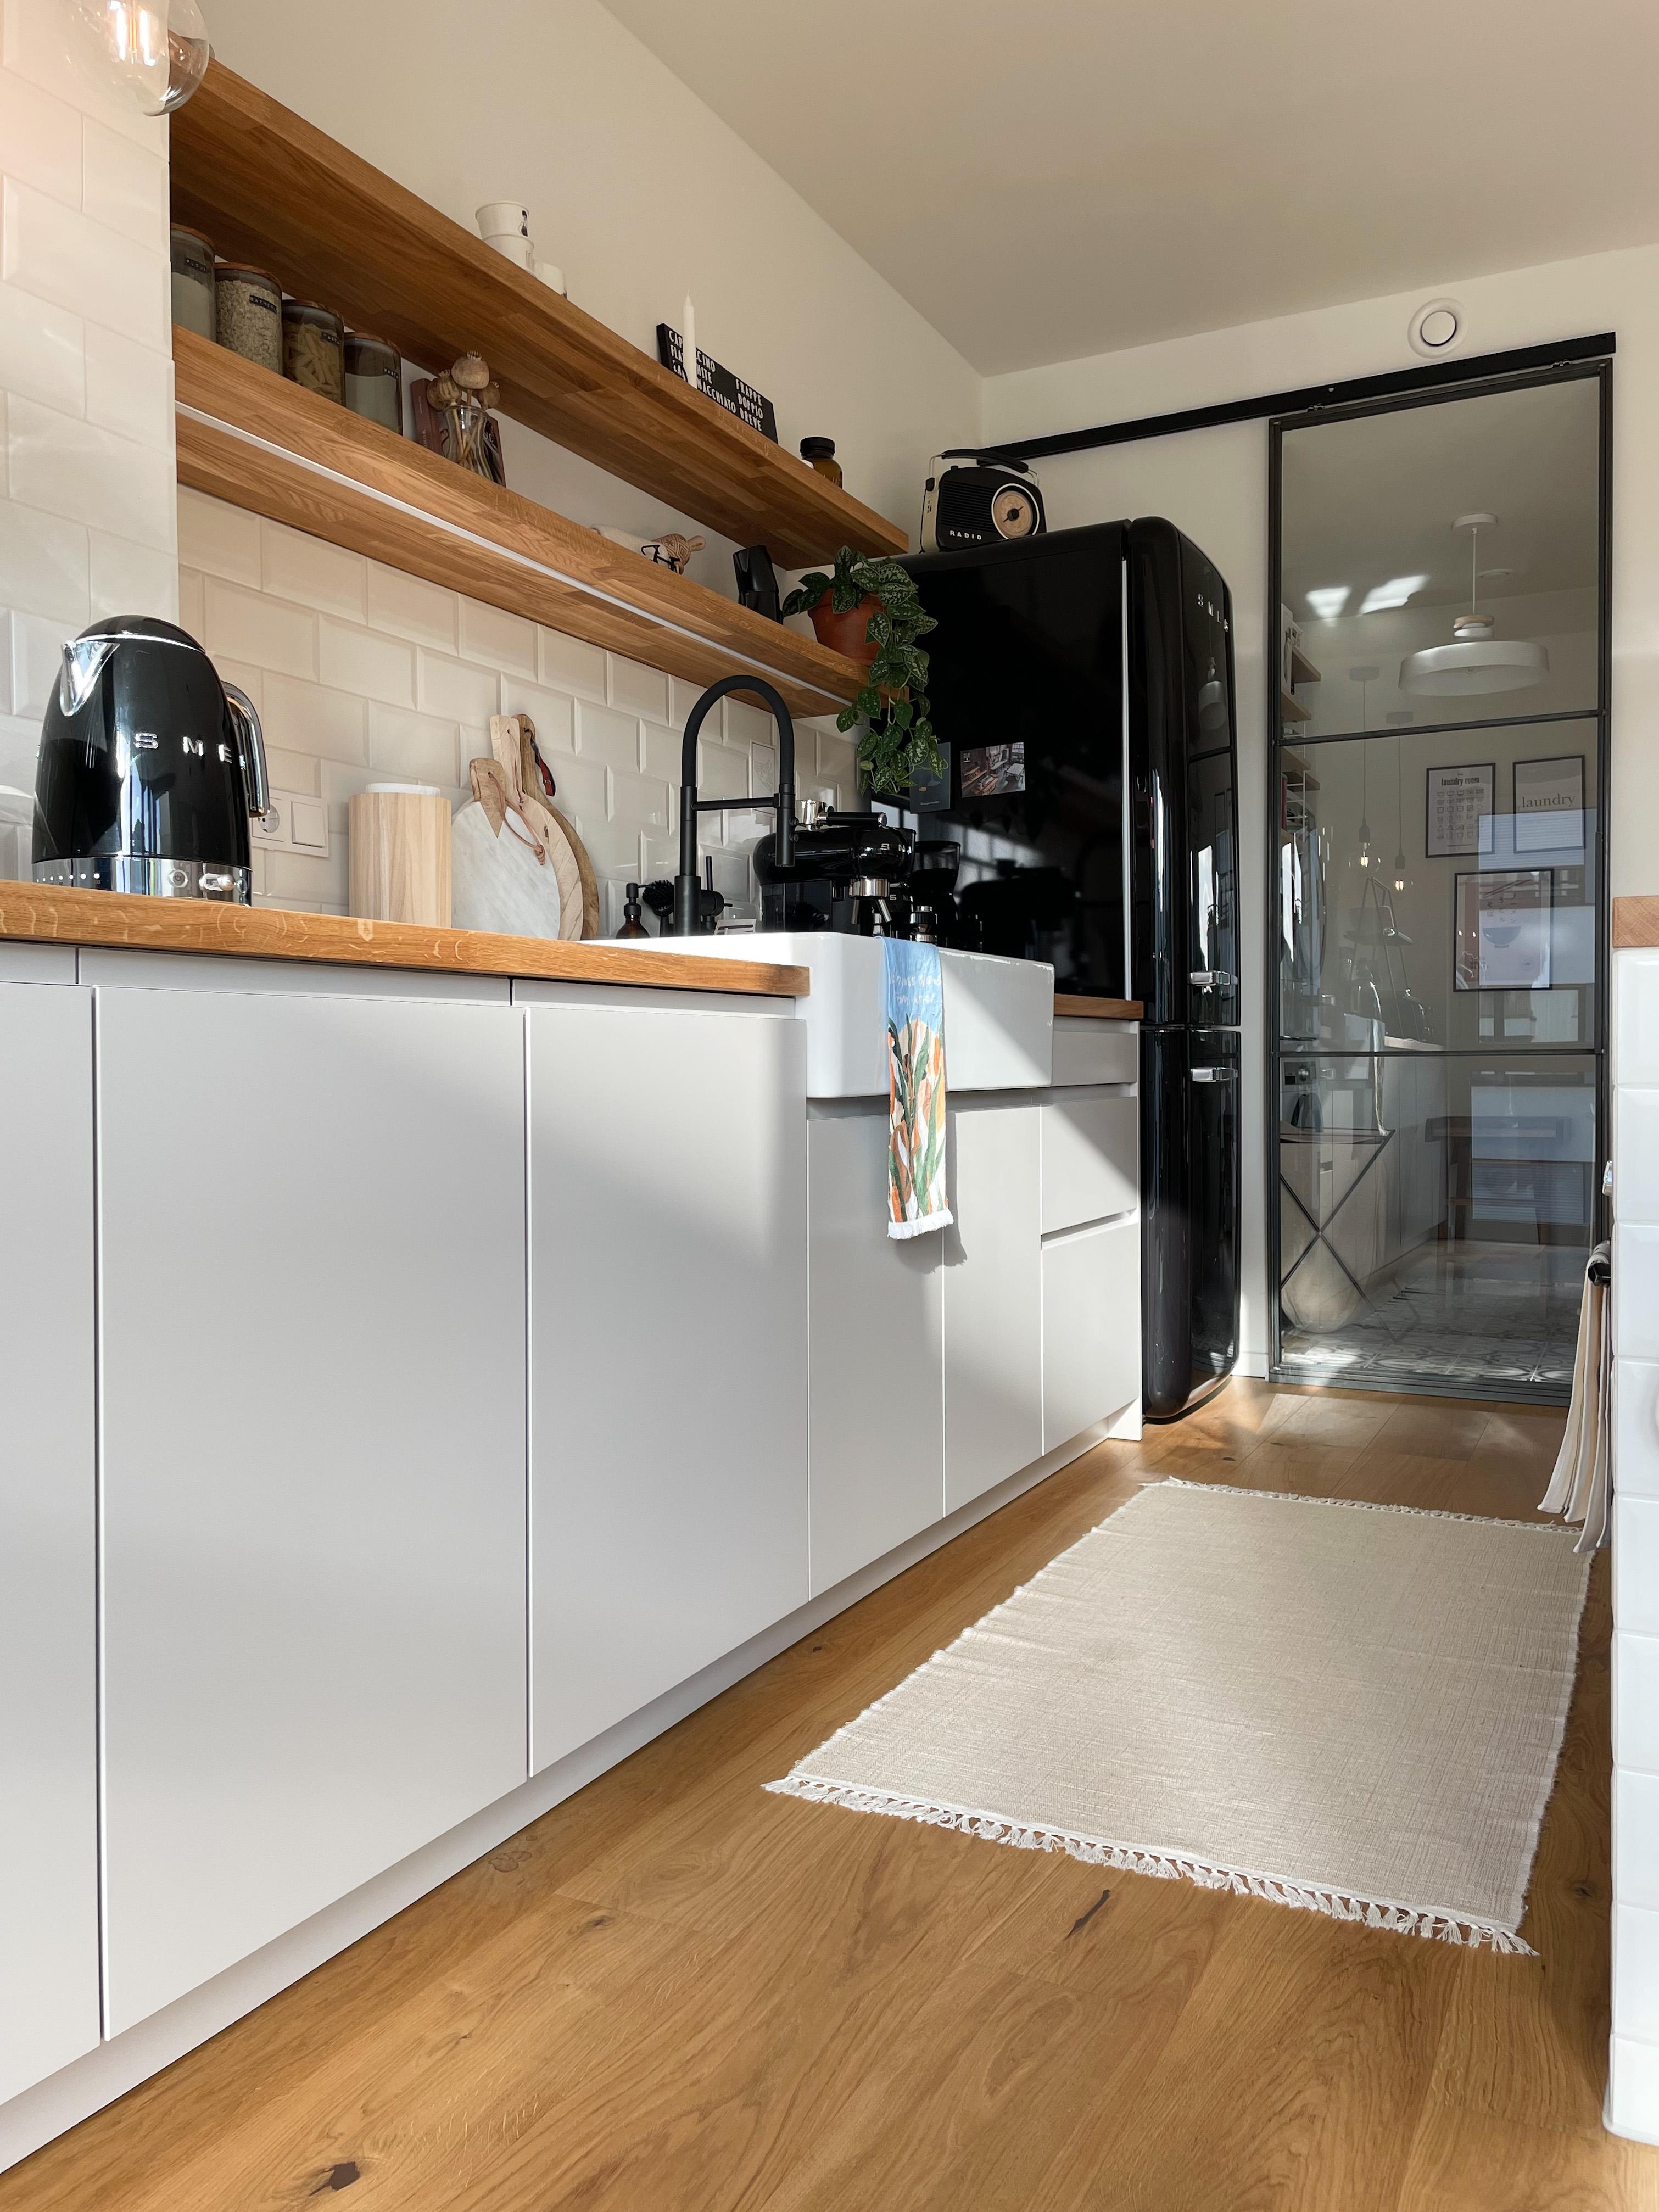 Mal eine andere Perspektive der Küche mit Abstellraum. 
#Kücheninspo #Küchendeko #Küchenregal #Küchenideen #Kücheninsel